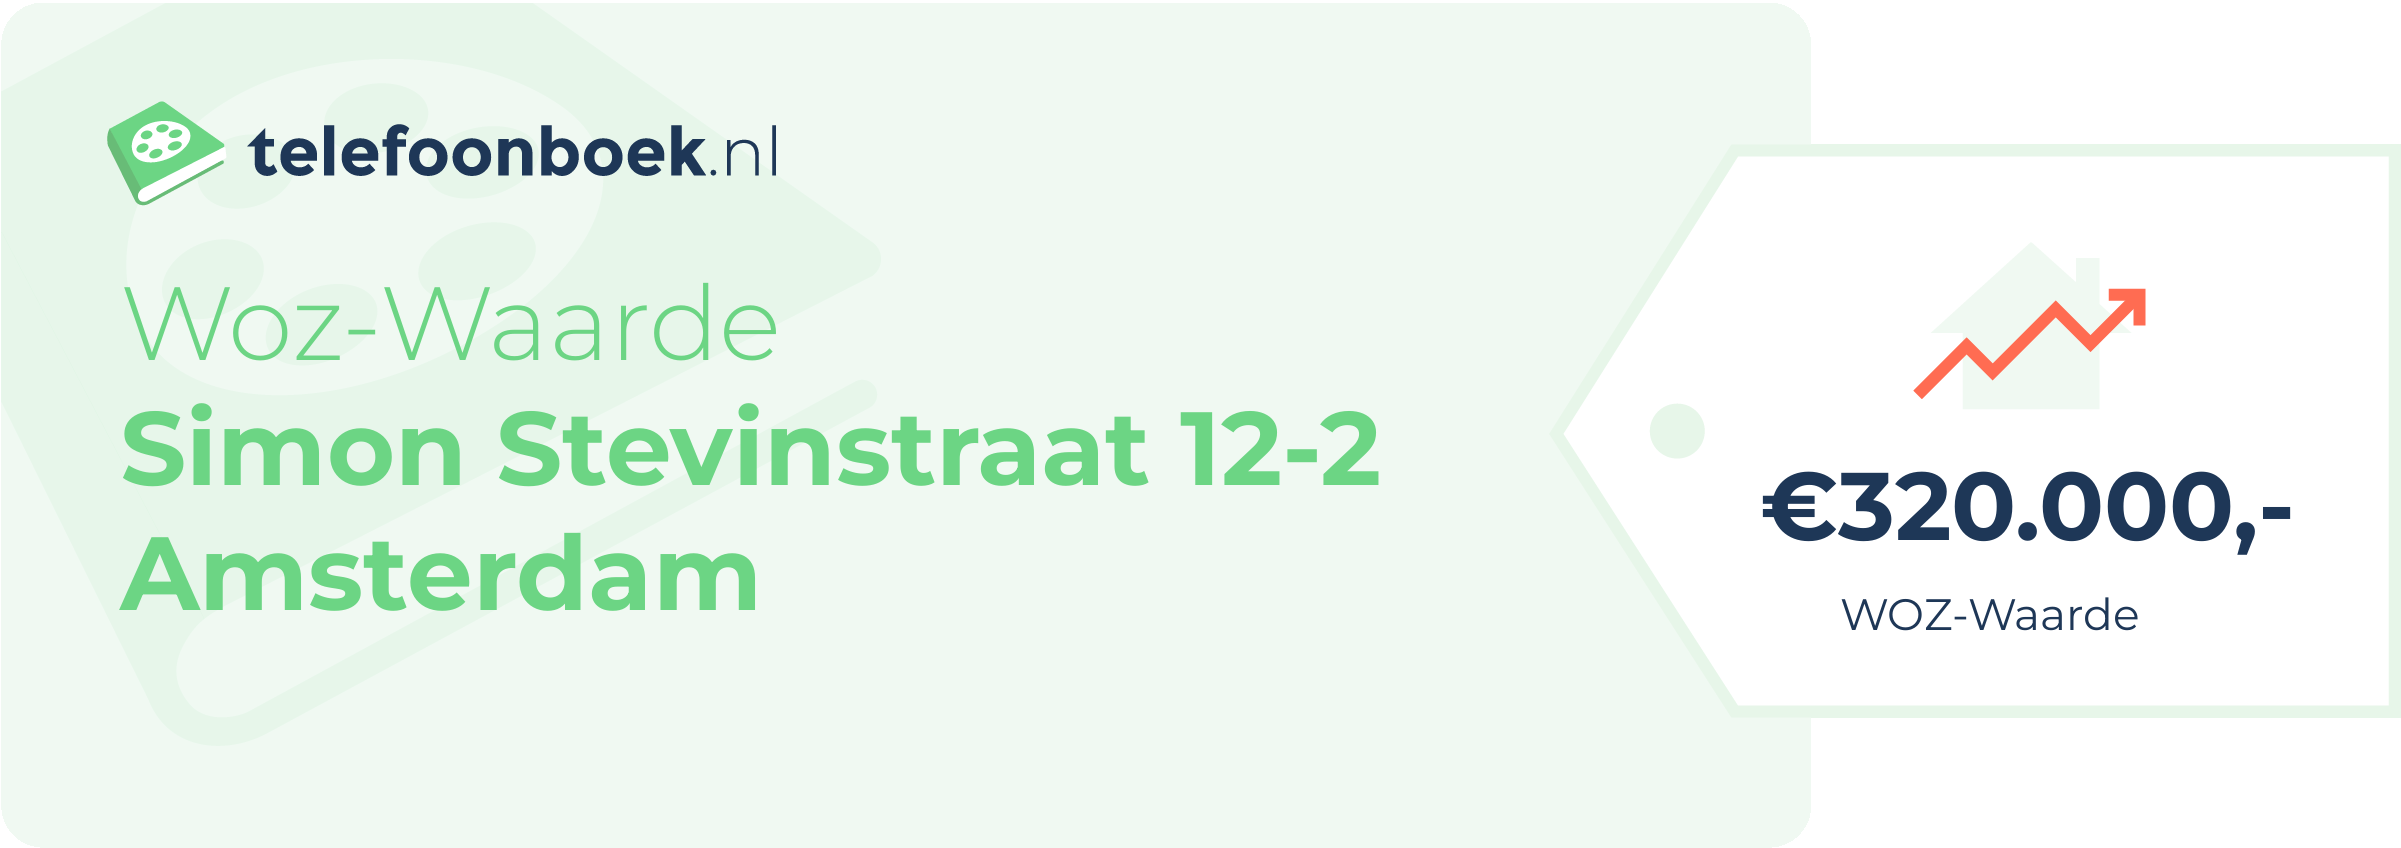 WOZ-waarde Simon Stevinstraat 12-2 Amsterdam